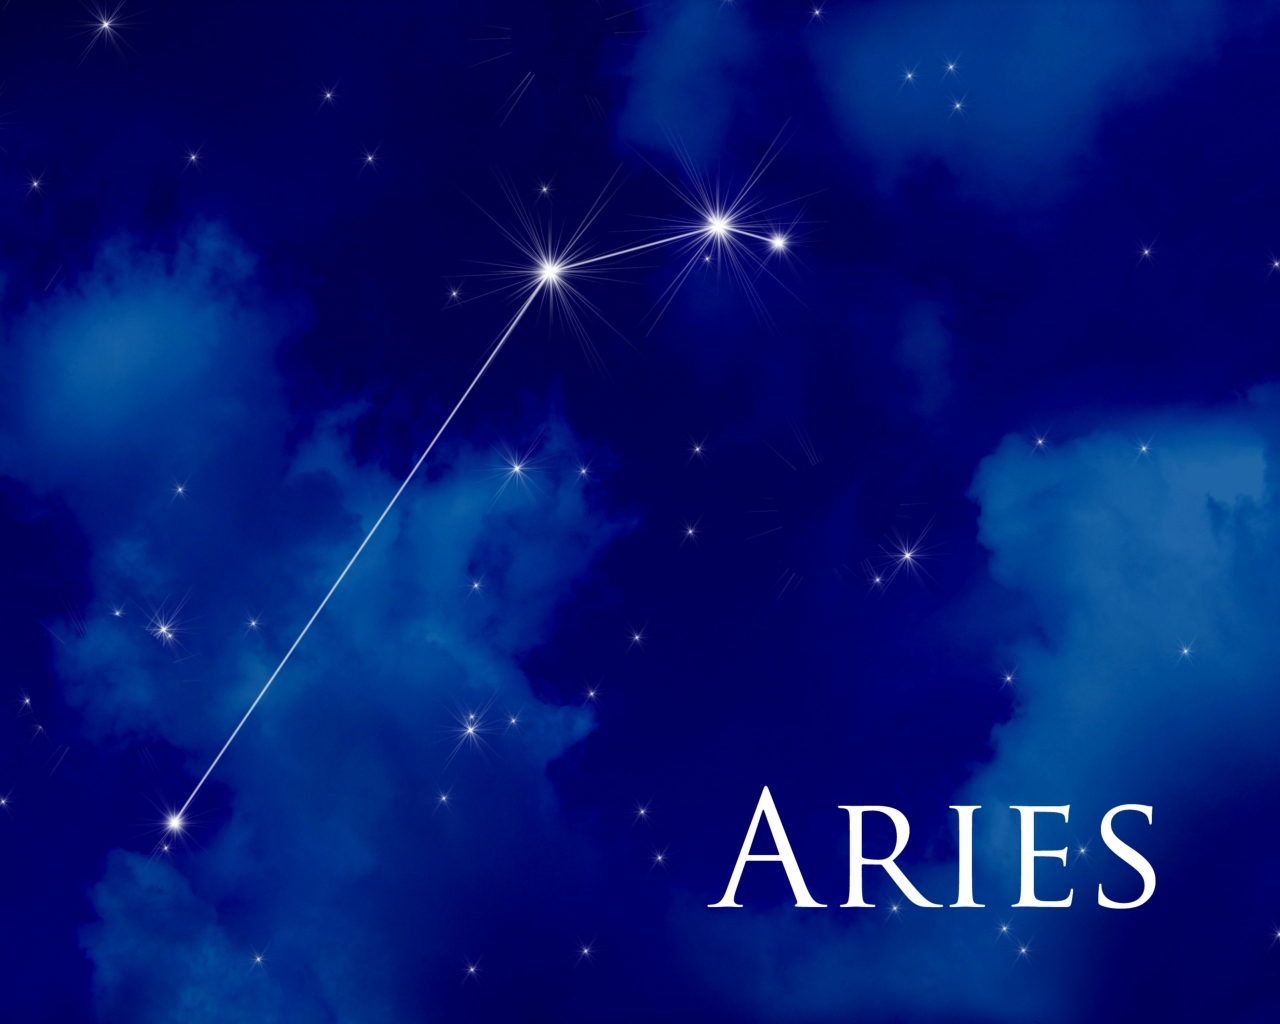 [49+] Aries Horoscope Wallpapers | WallpaperSafari